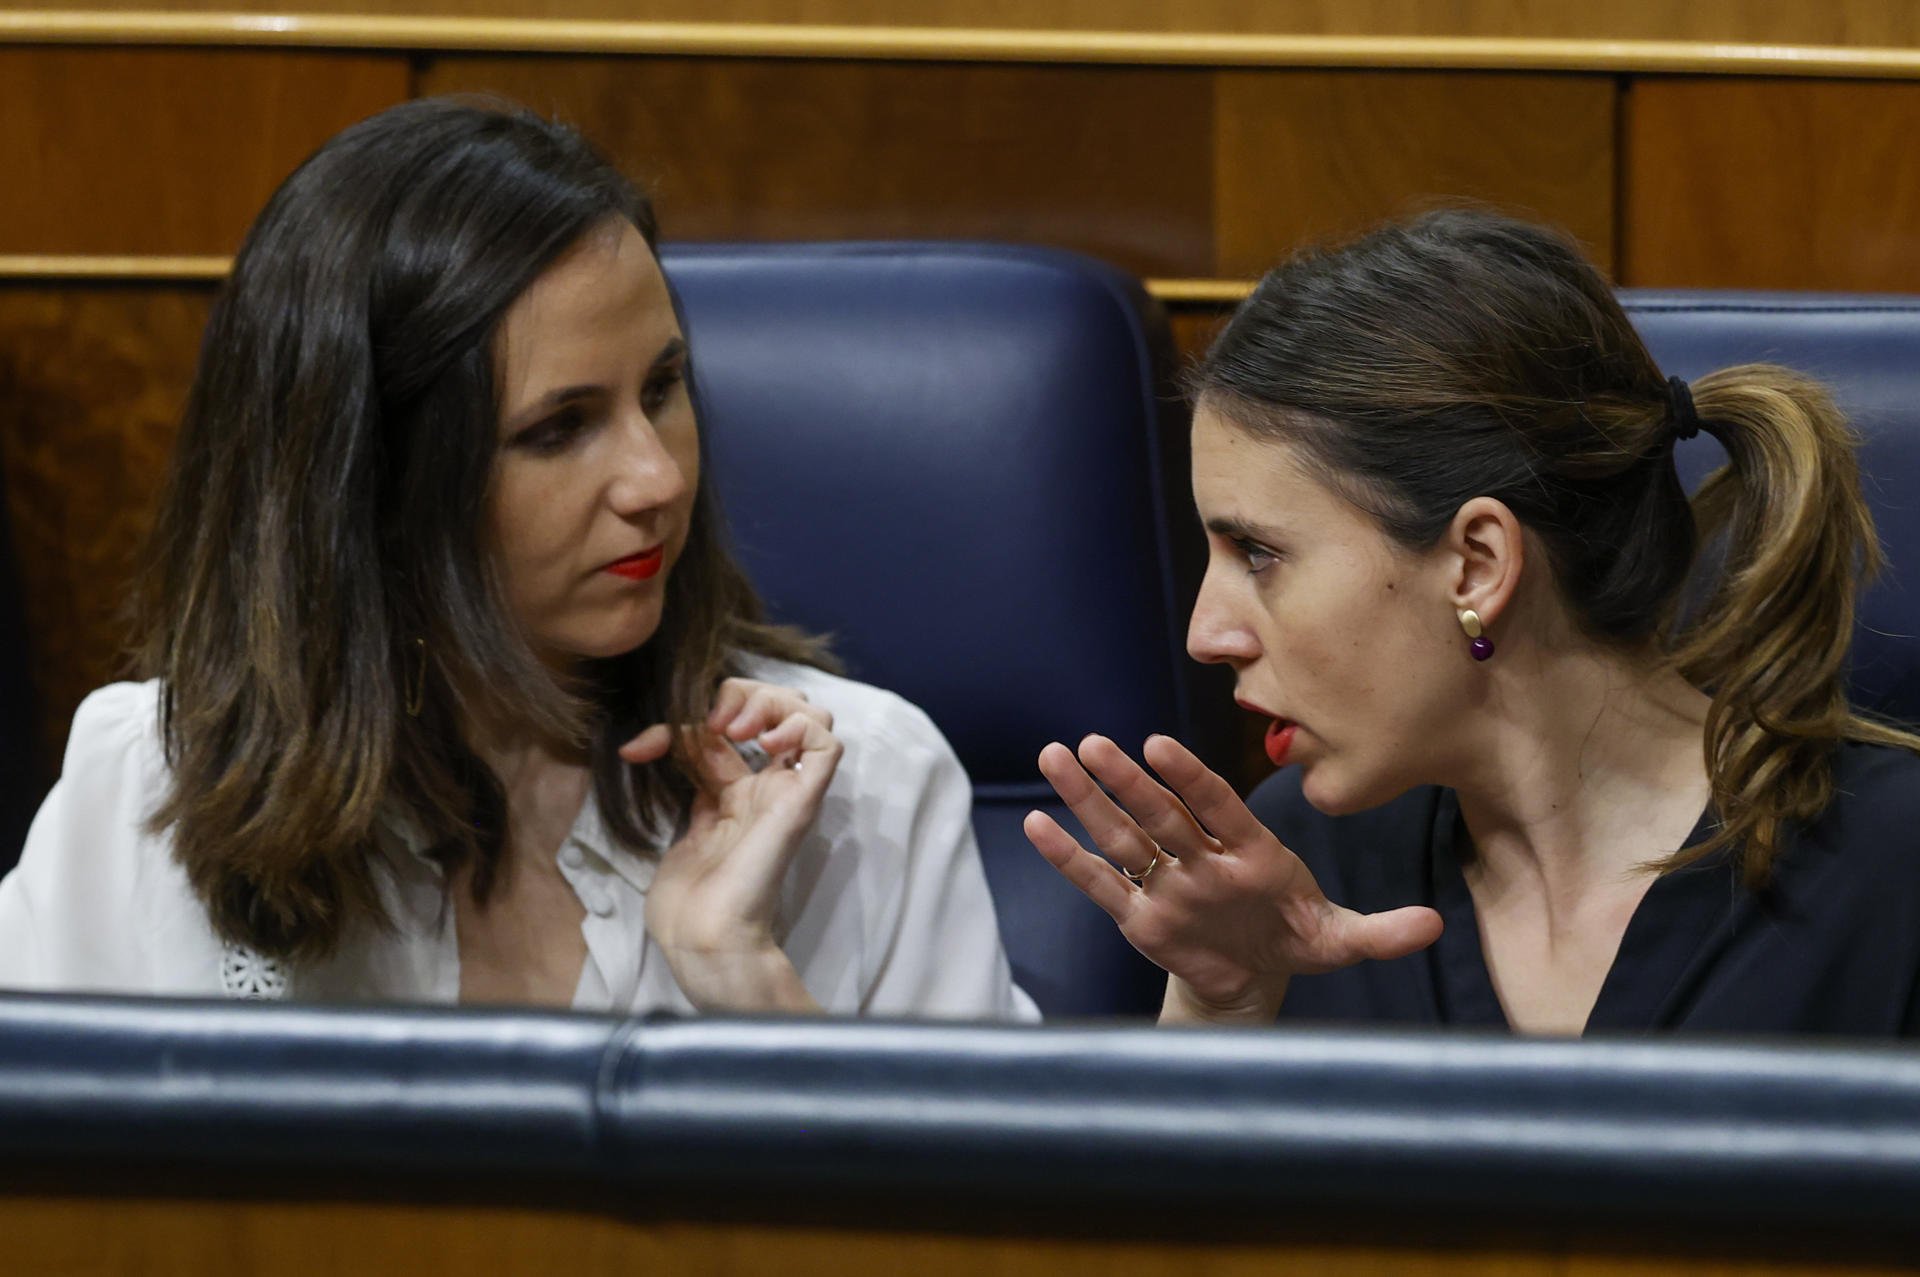 Lluvia de reproches entre PSOE y Podemos por la reforma del 'sí es sí': "Dejen las peroratas"